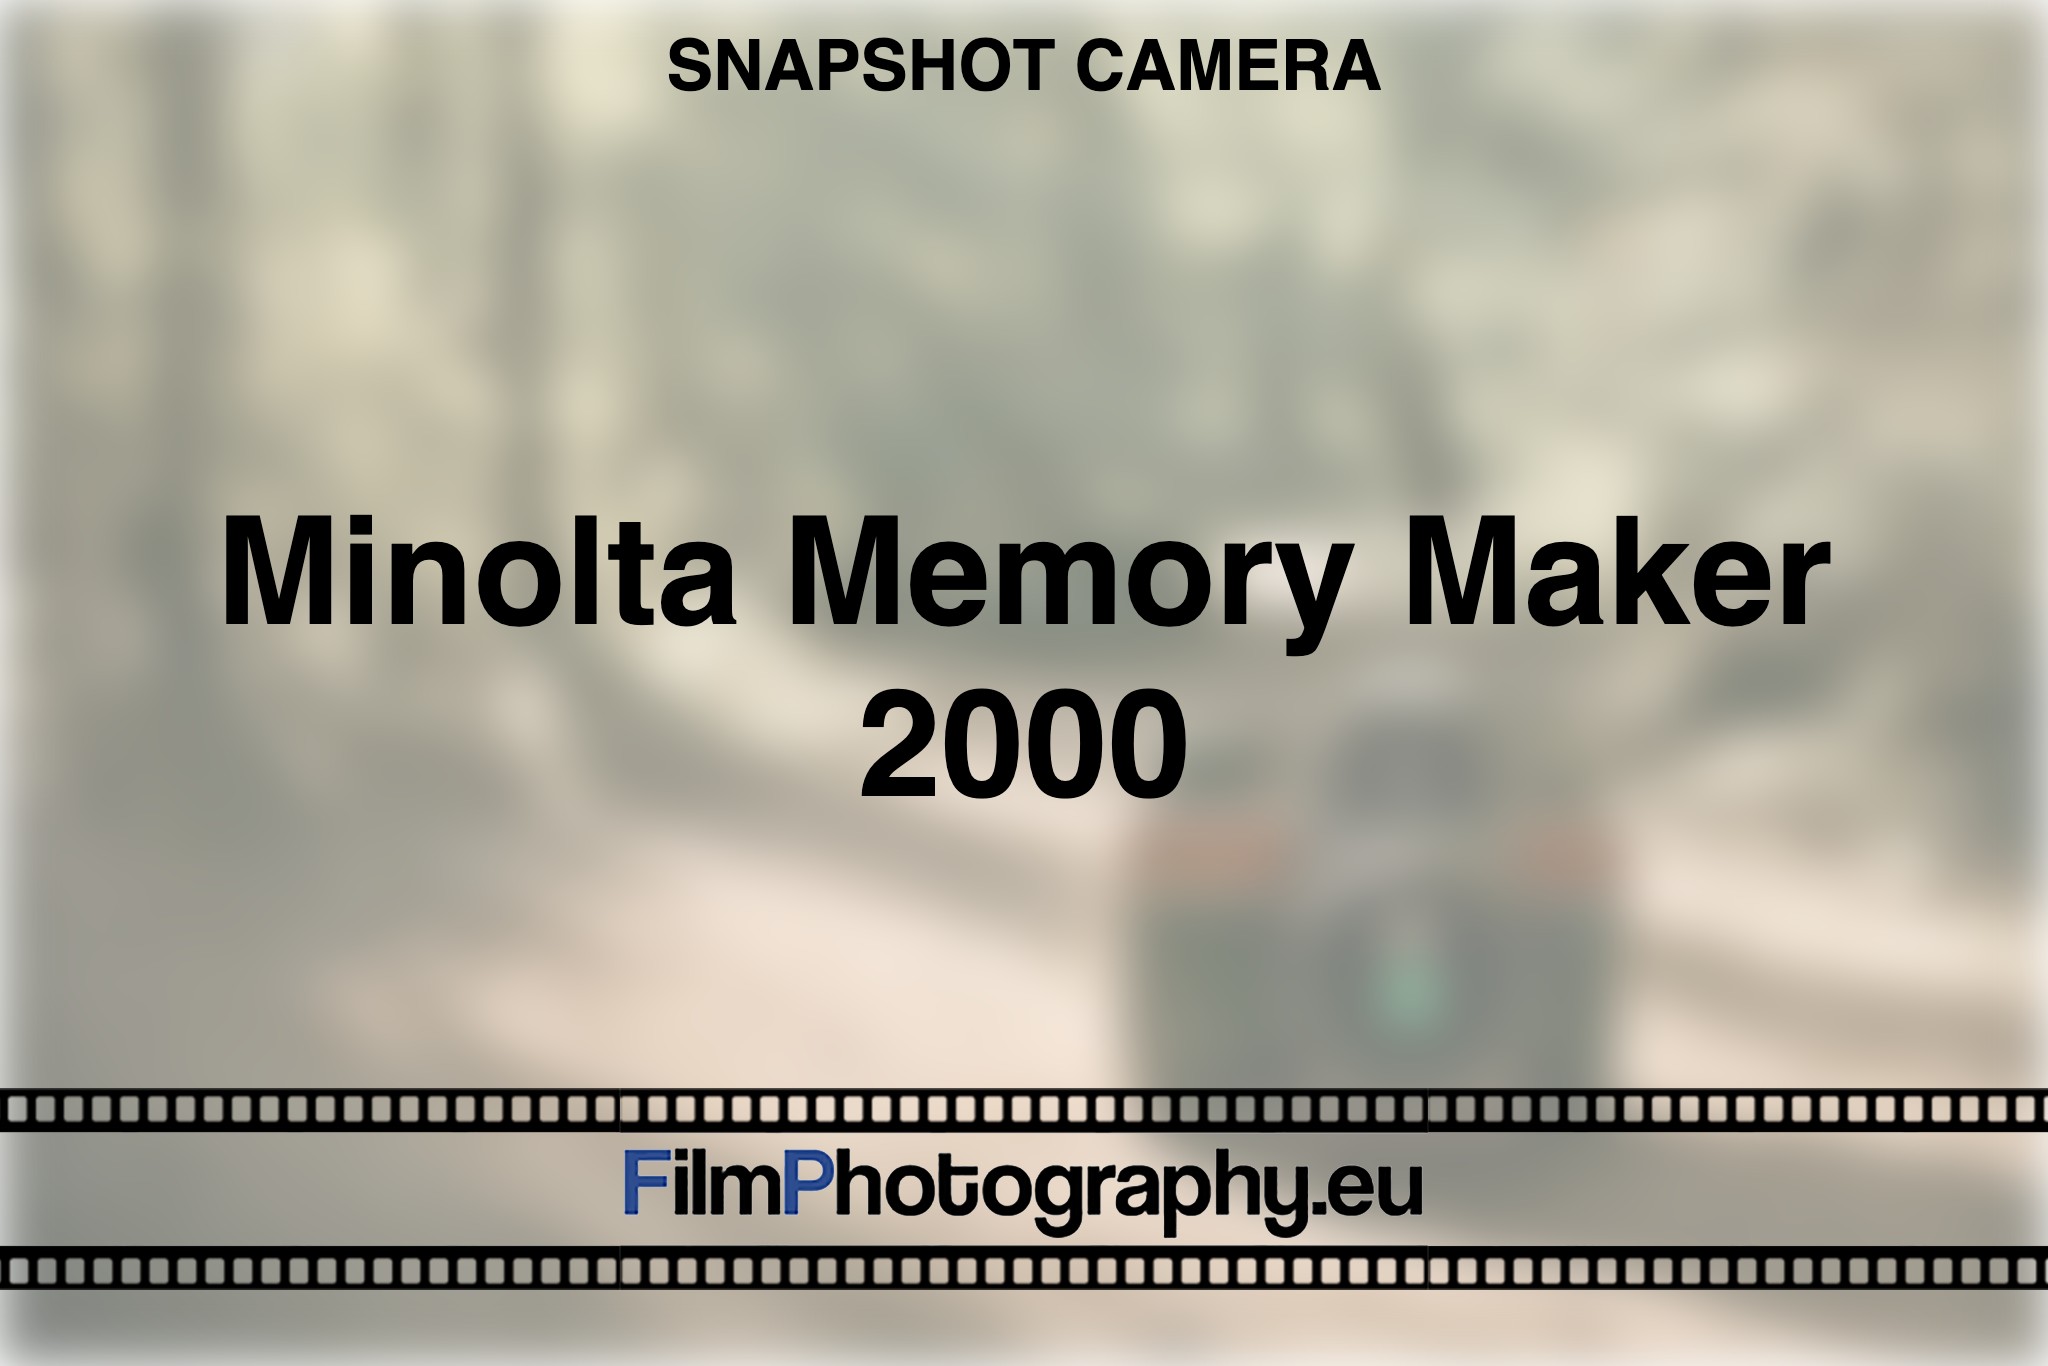 minolta-memory-maker-2000-snapshot-camera-bnv